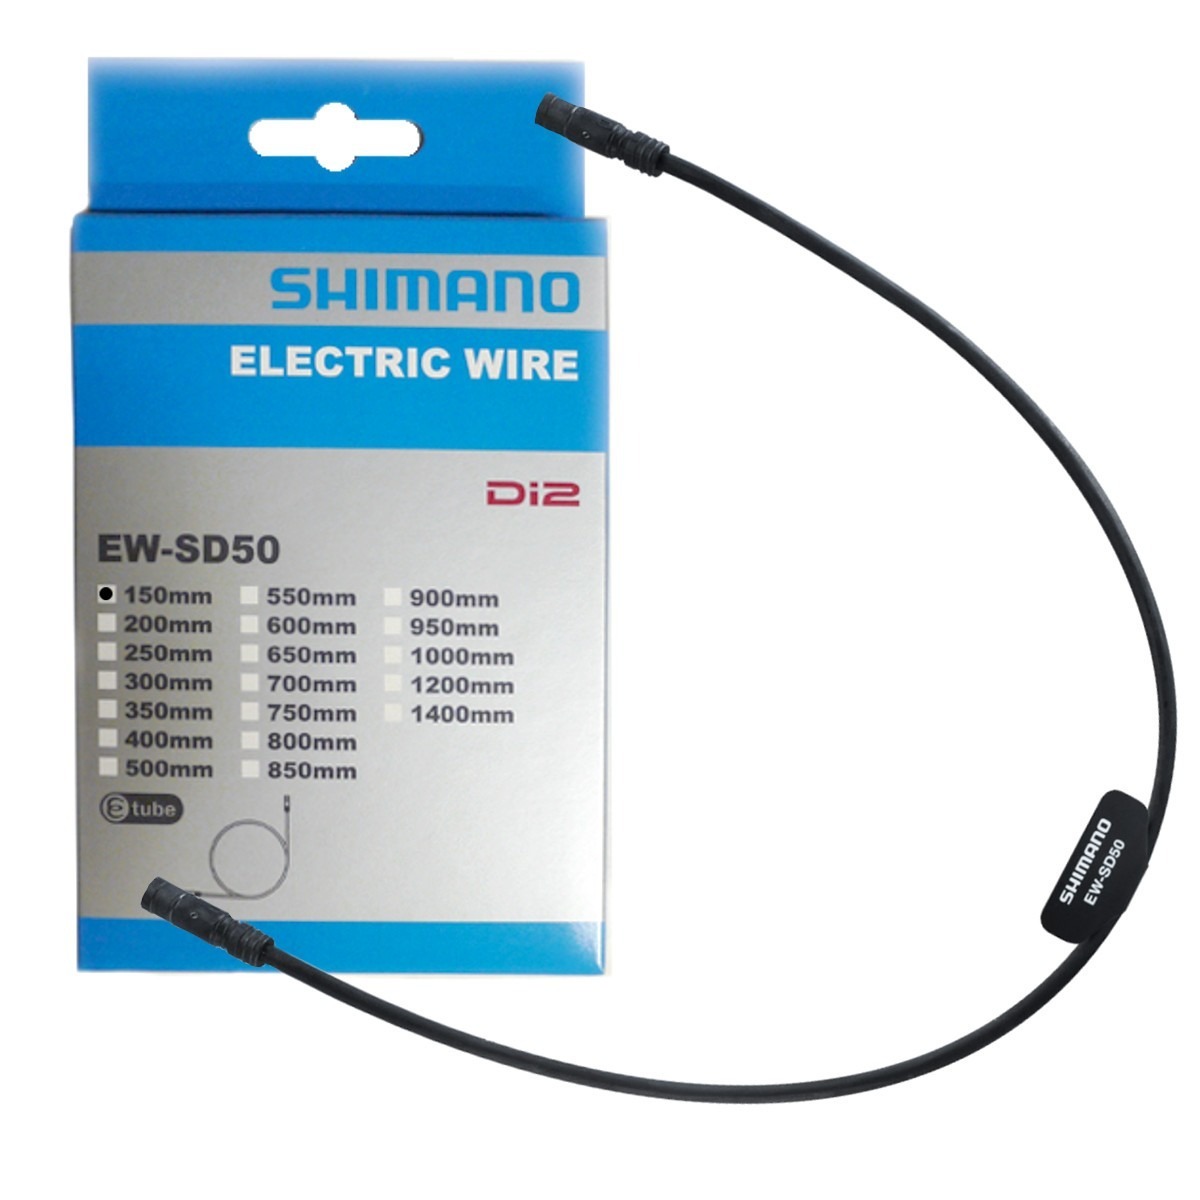 Shimano EW-SD50 E-Tube Ultegra Dura Ace Di2 Electric Wire 900mm